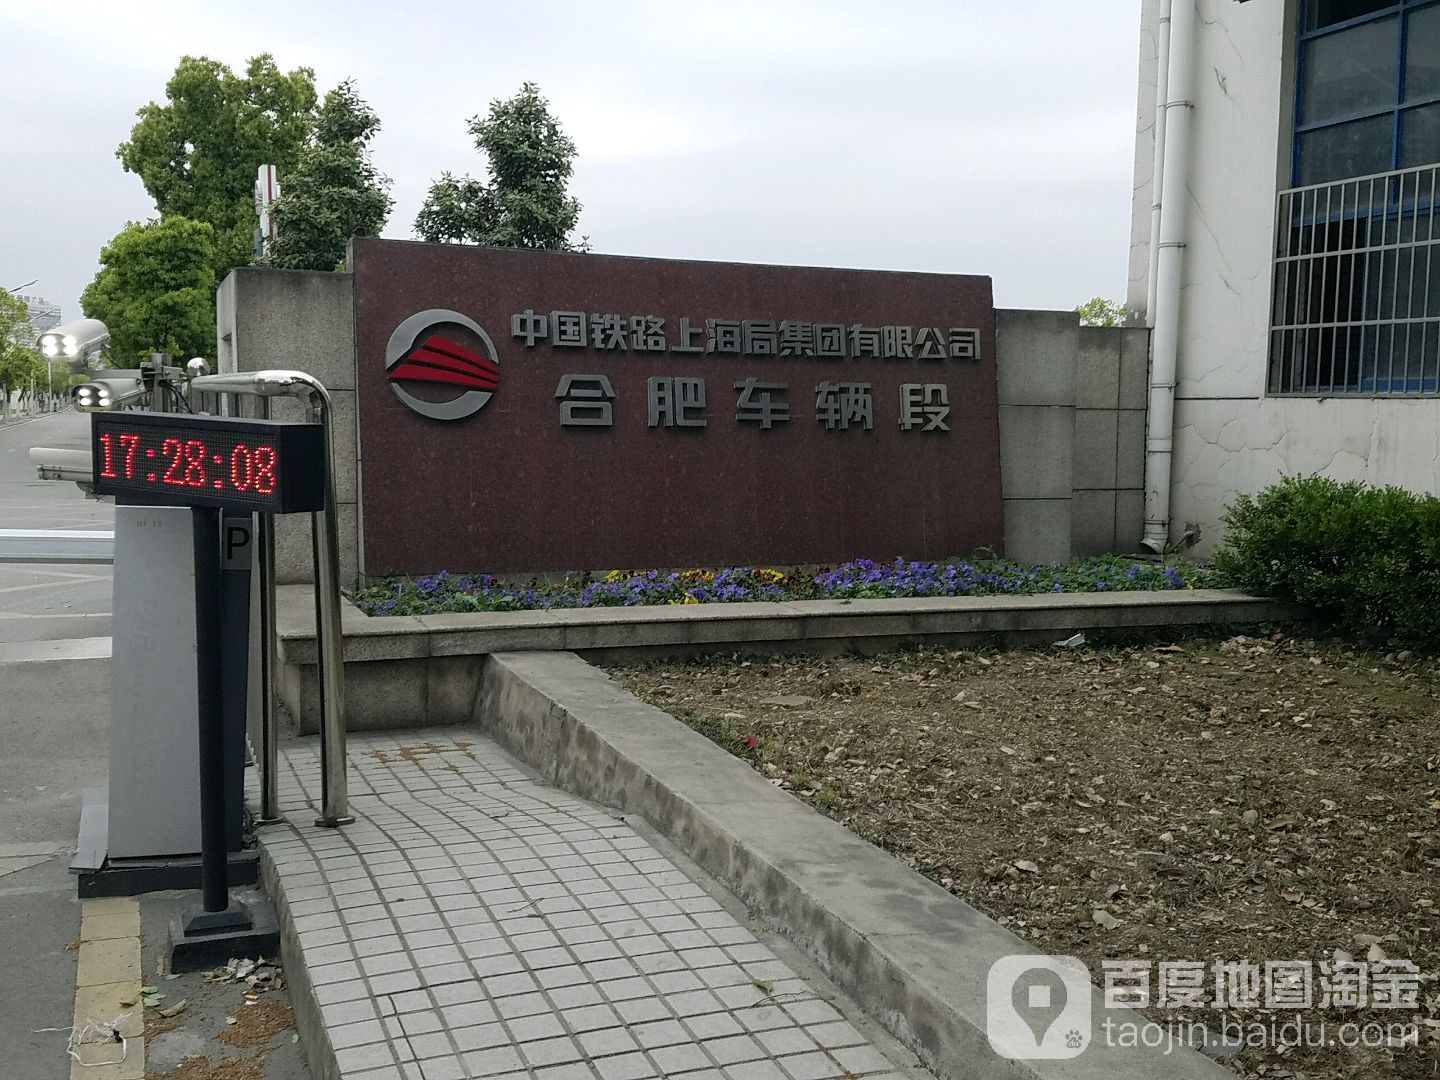 上海铁路局合肥车辆段图片